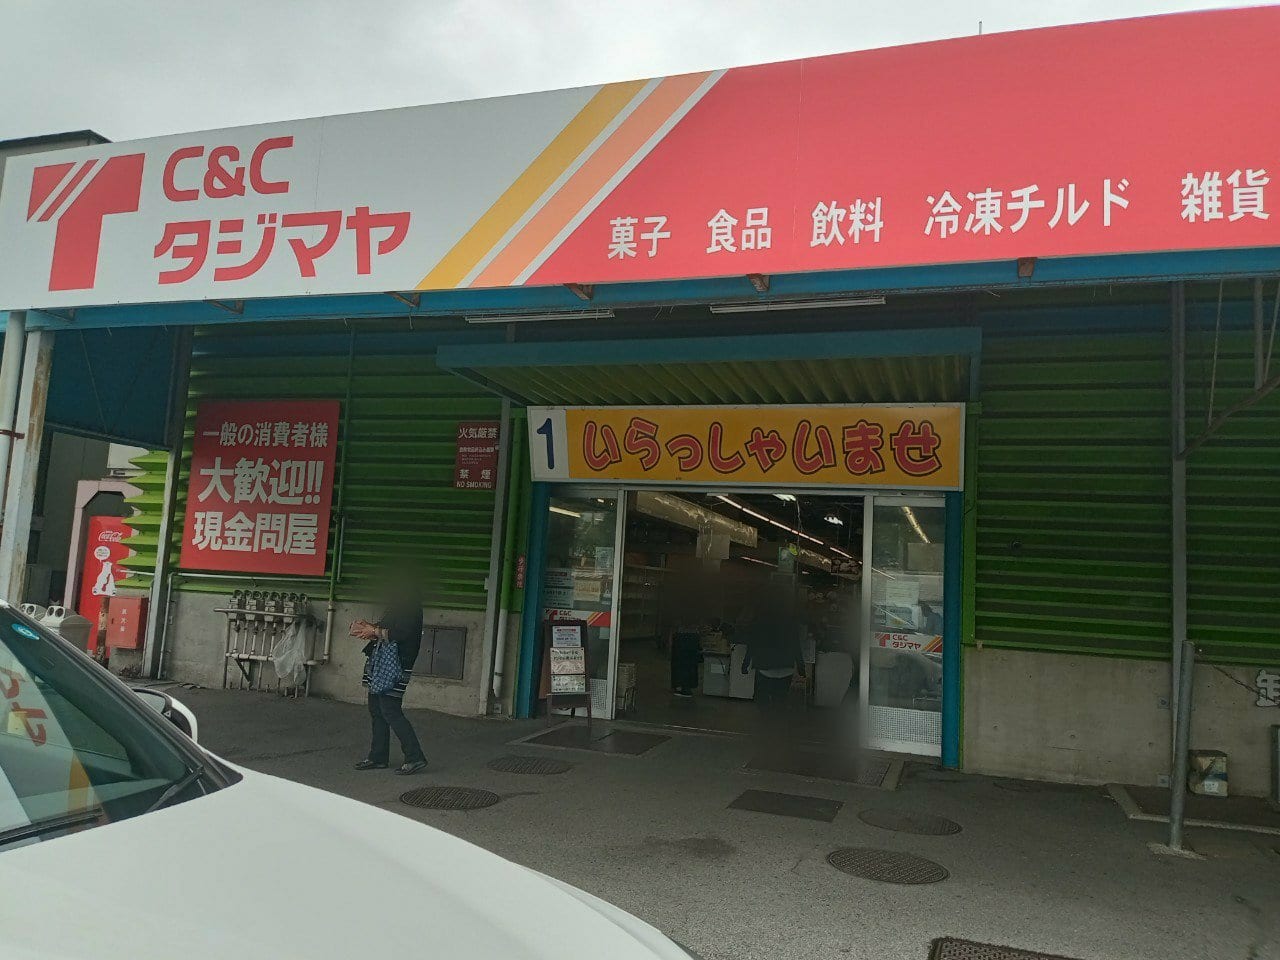 6月11日をもって菓子問屋、タジマヤ越谷市場店が閉店となりました。